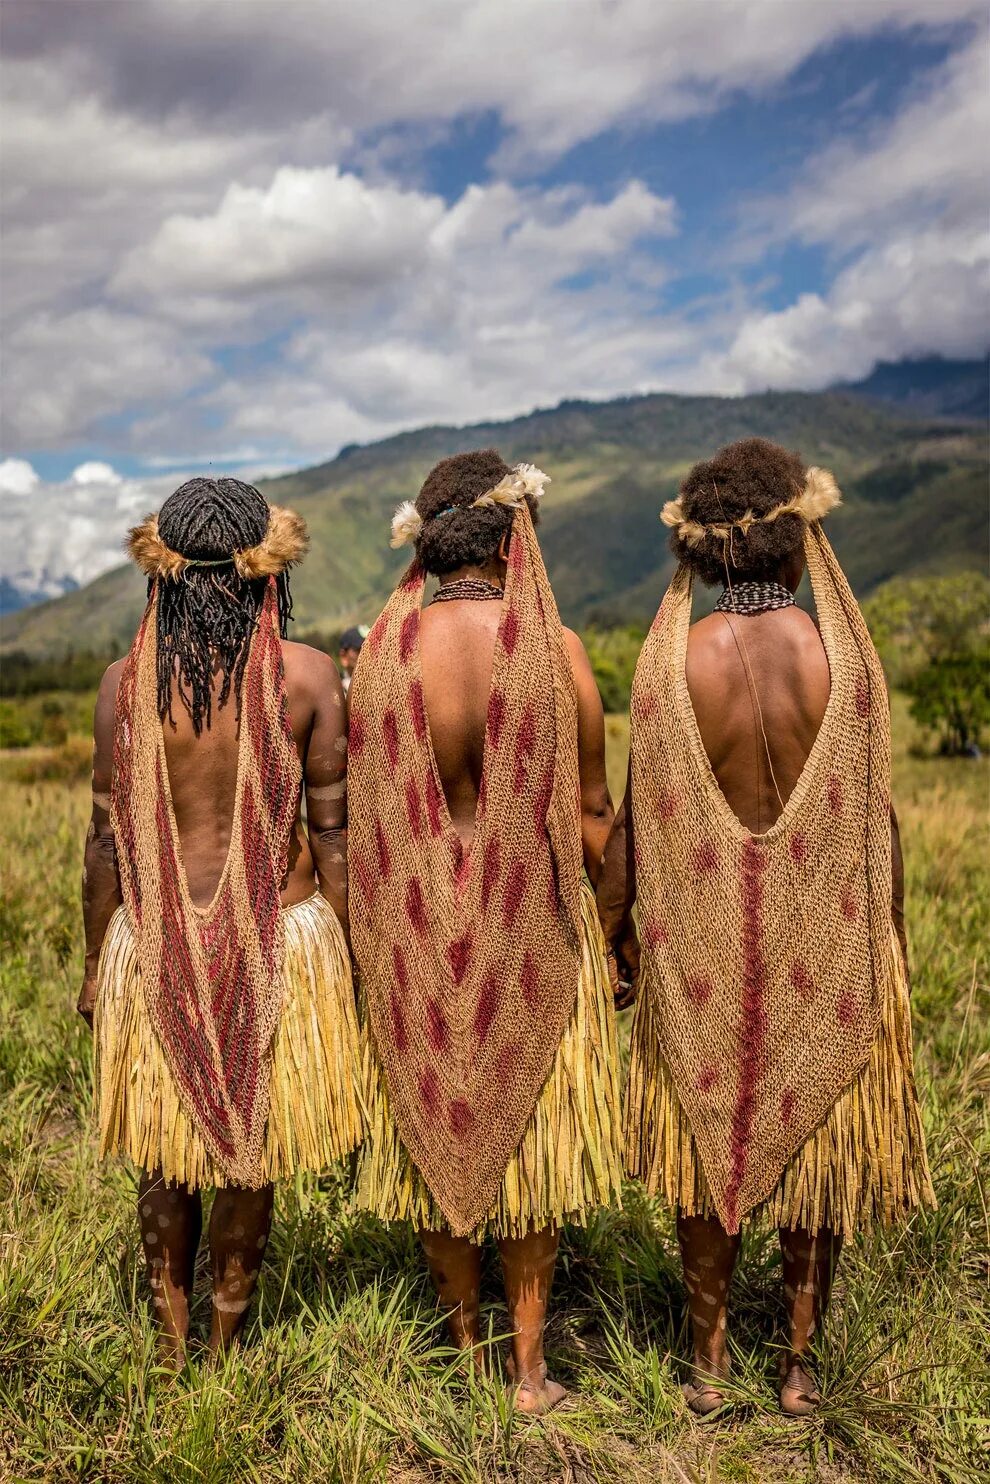 Племя Дани новая Гвинея. Дикие Папуасы новой Гвинеи. Аборигены одежда женская.